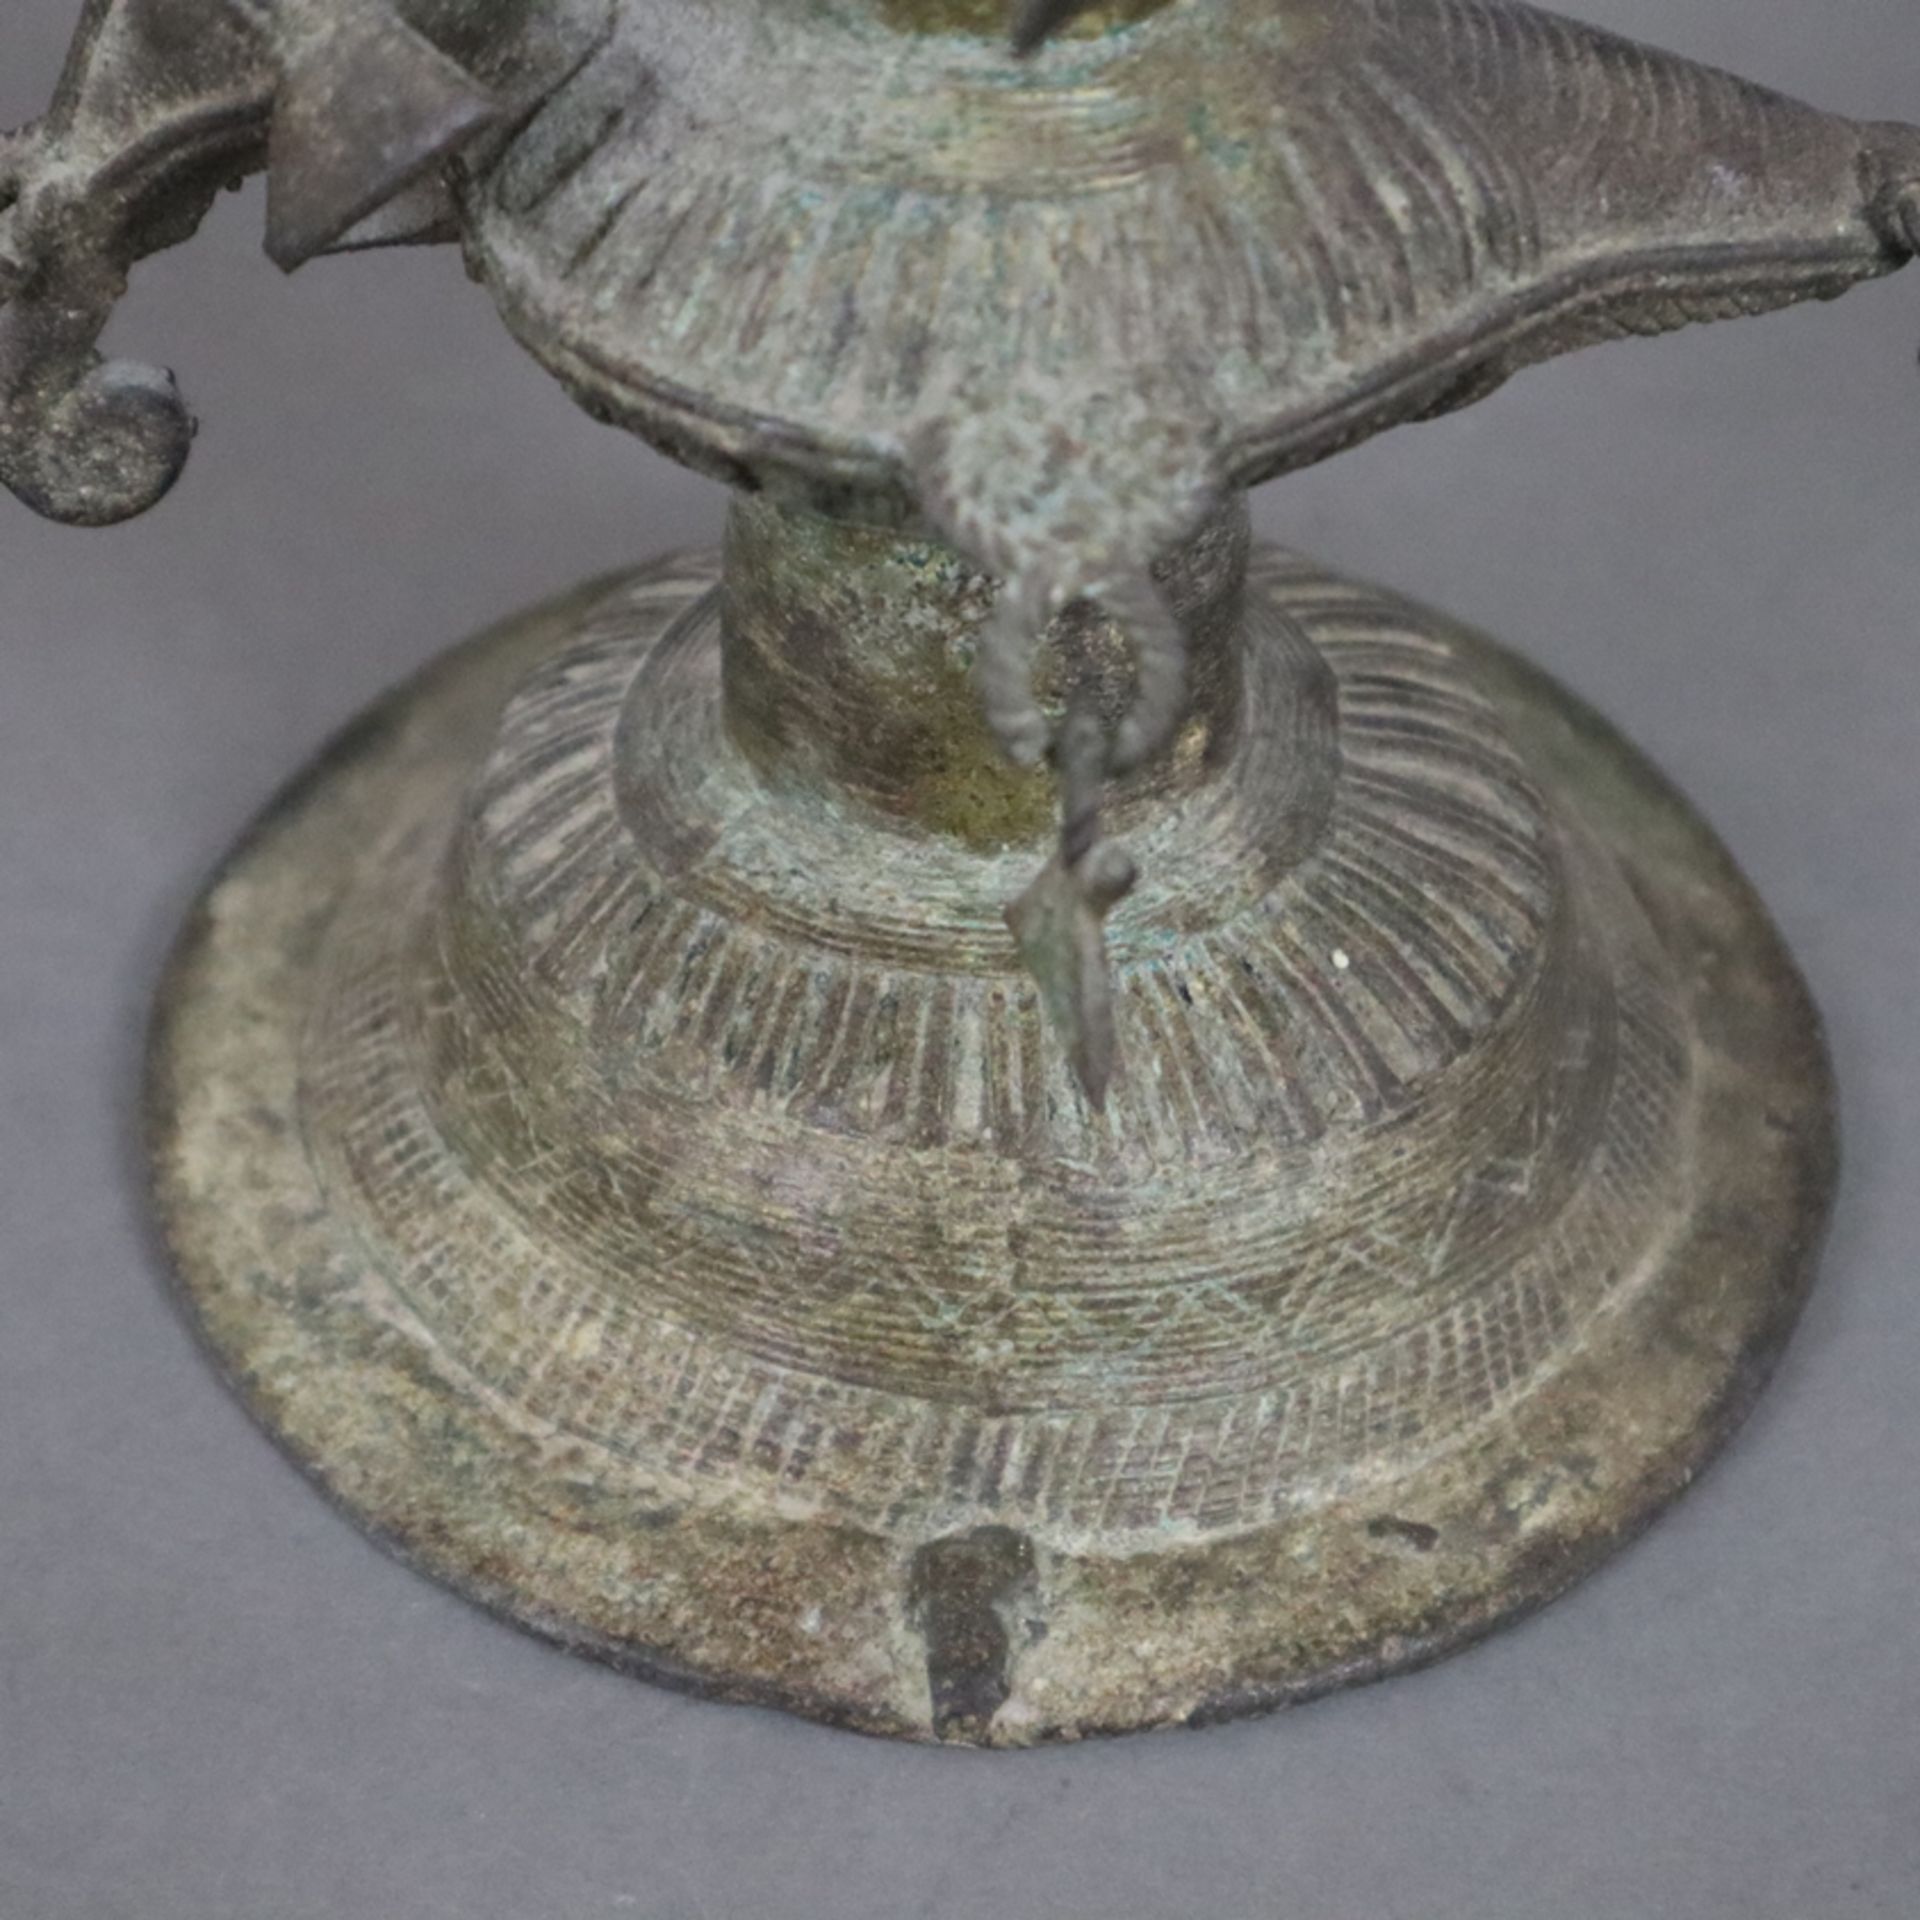 Hohe Öllampe - Indien, Bastar-Region, Bronze mit Alterspatina, über gewölbtem Fuß gegliederter Scha - Bild 9 aus 9